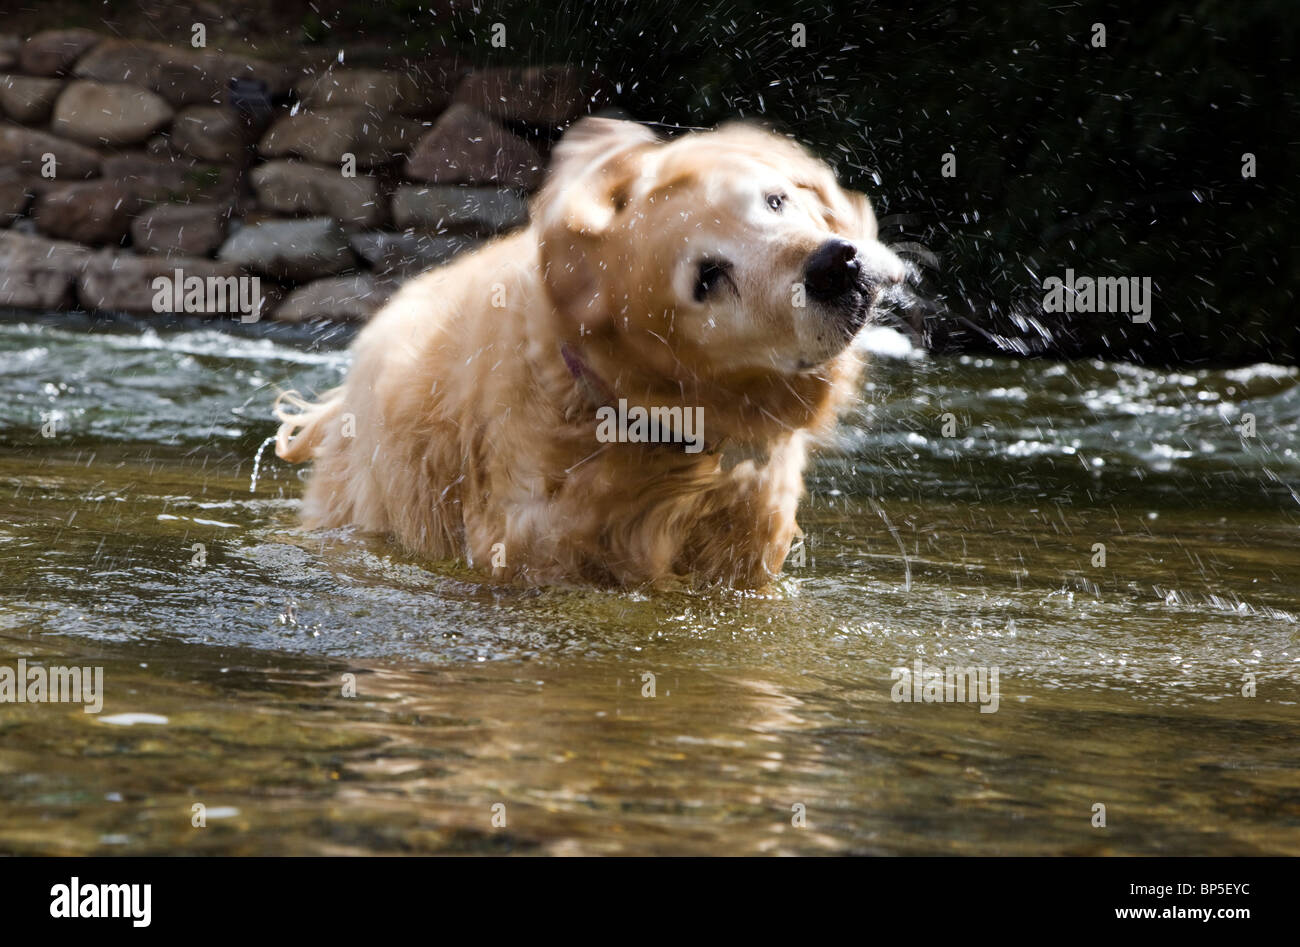 Godlen Retriever dog off di scuotimento in Arkansas River, Salida, Colorado, STATI UNITI D'AMERICA Foto Stock